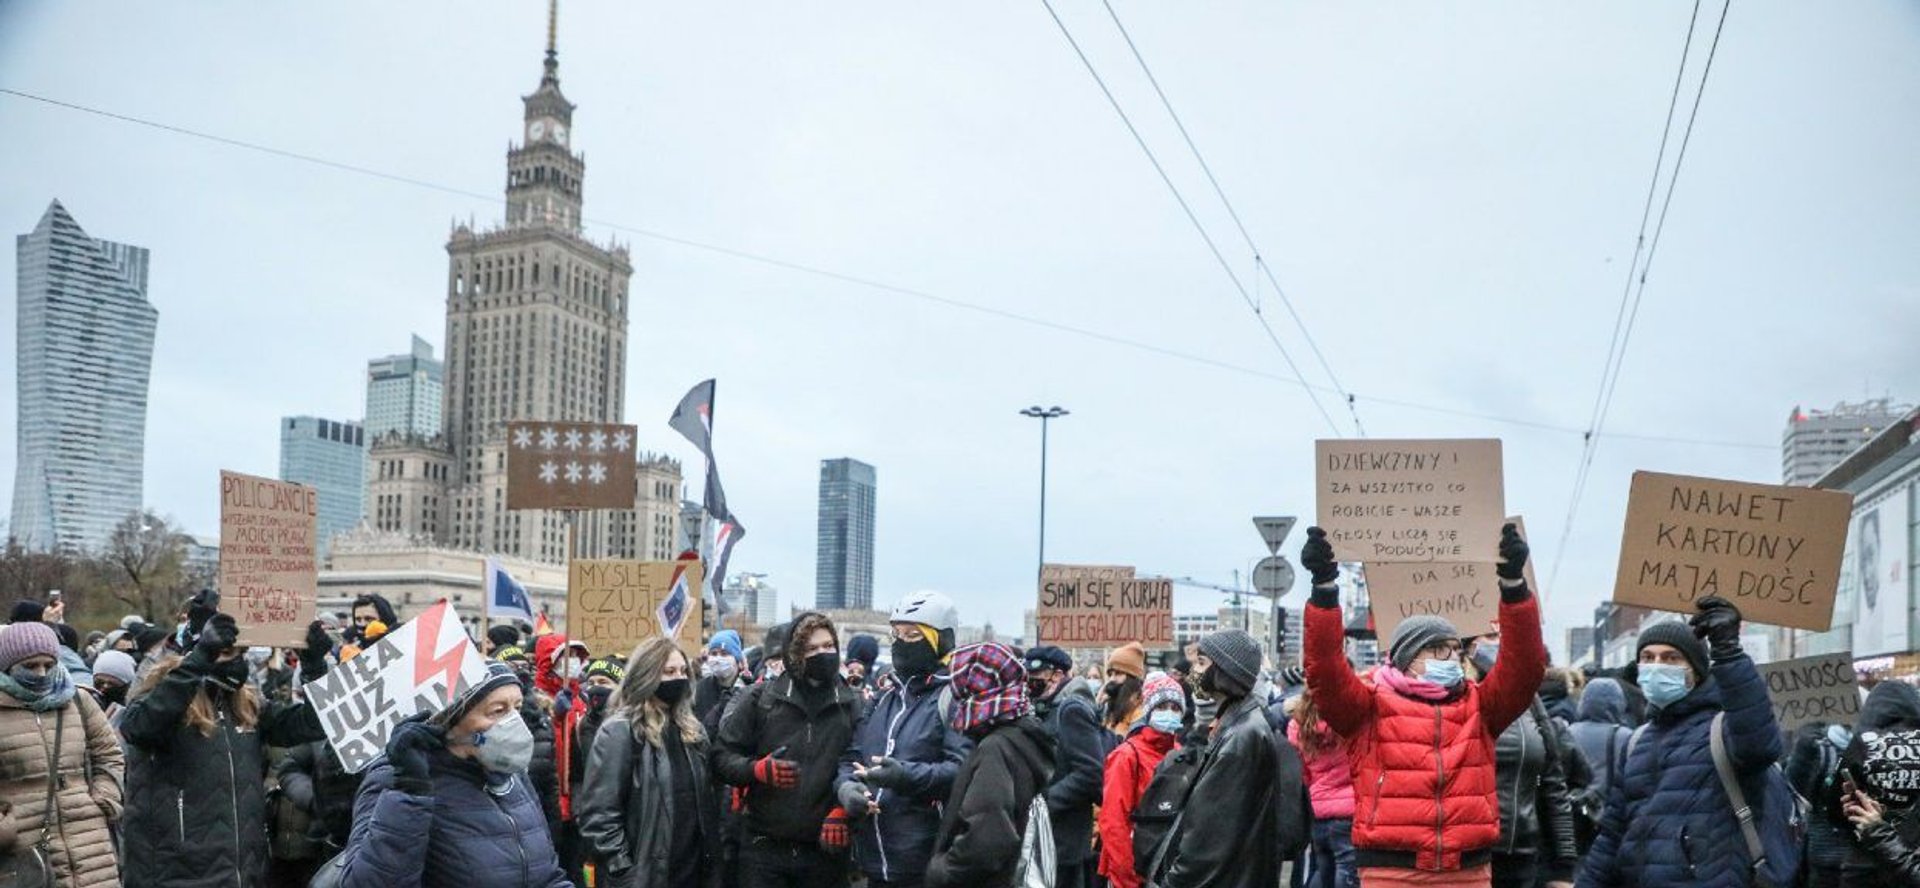 W poniedziałek w Warszawie odbędzie się kolejna odsłona Strajku Kobiet, do którego dołączy młodzież walcząca o klimat.